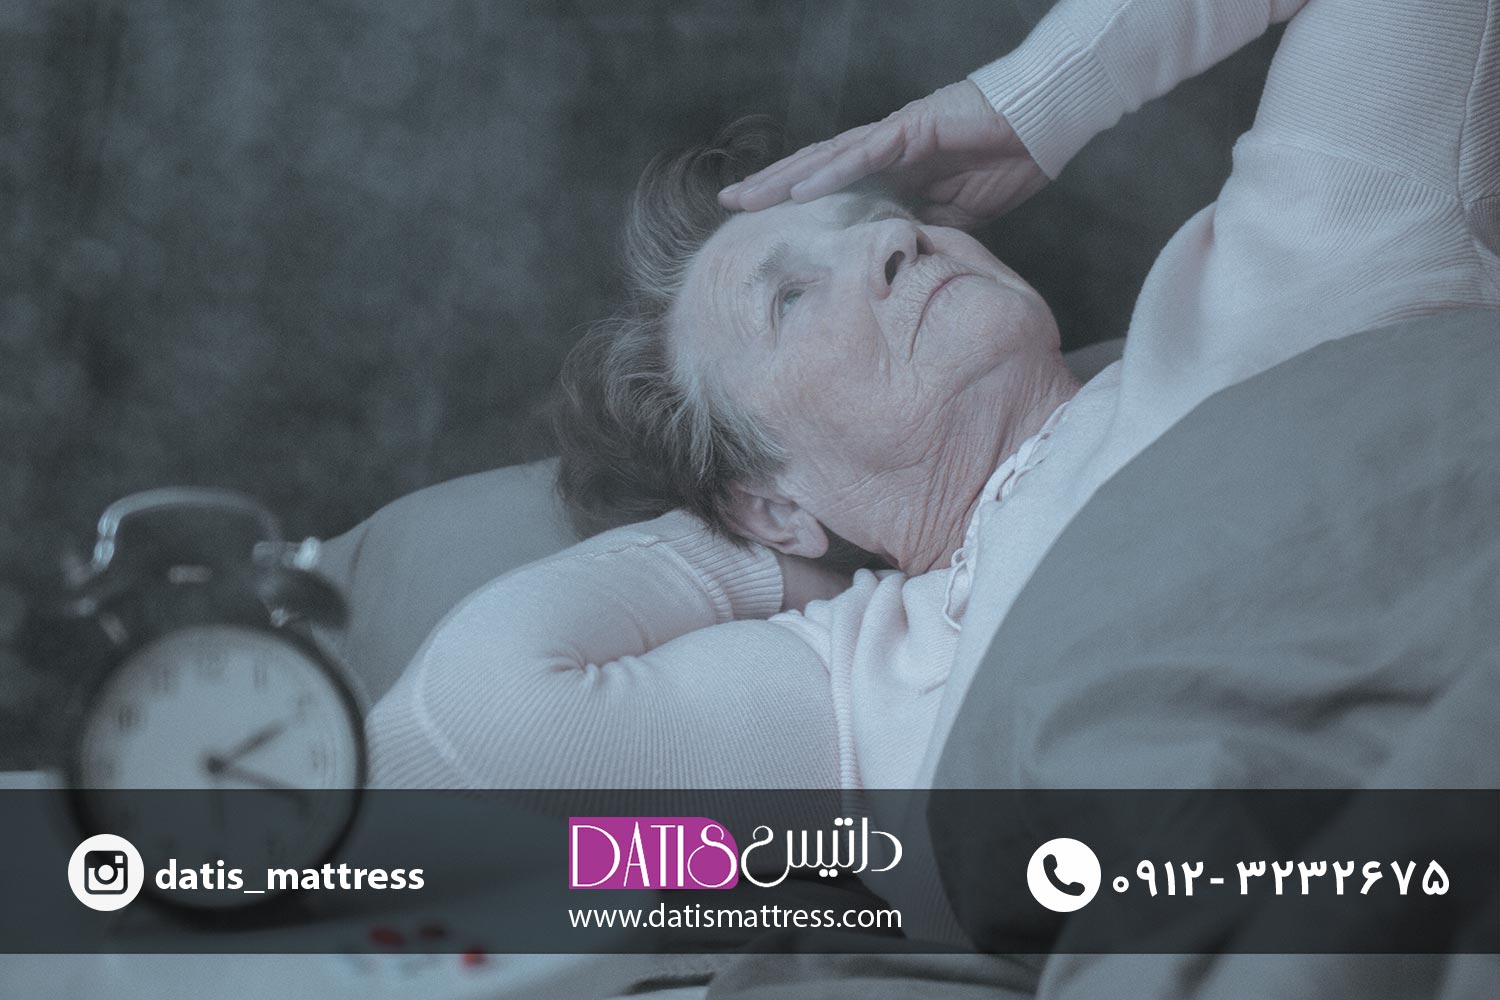 سردرد ساعت زنگ دار وضعیتی نادر است که افراد را از خواب بیدار می کند و نام دیگری است برای سردرد هیپنیک که یکی از انواع اختلالات خواب محسوب می شود